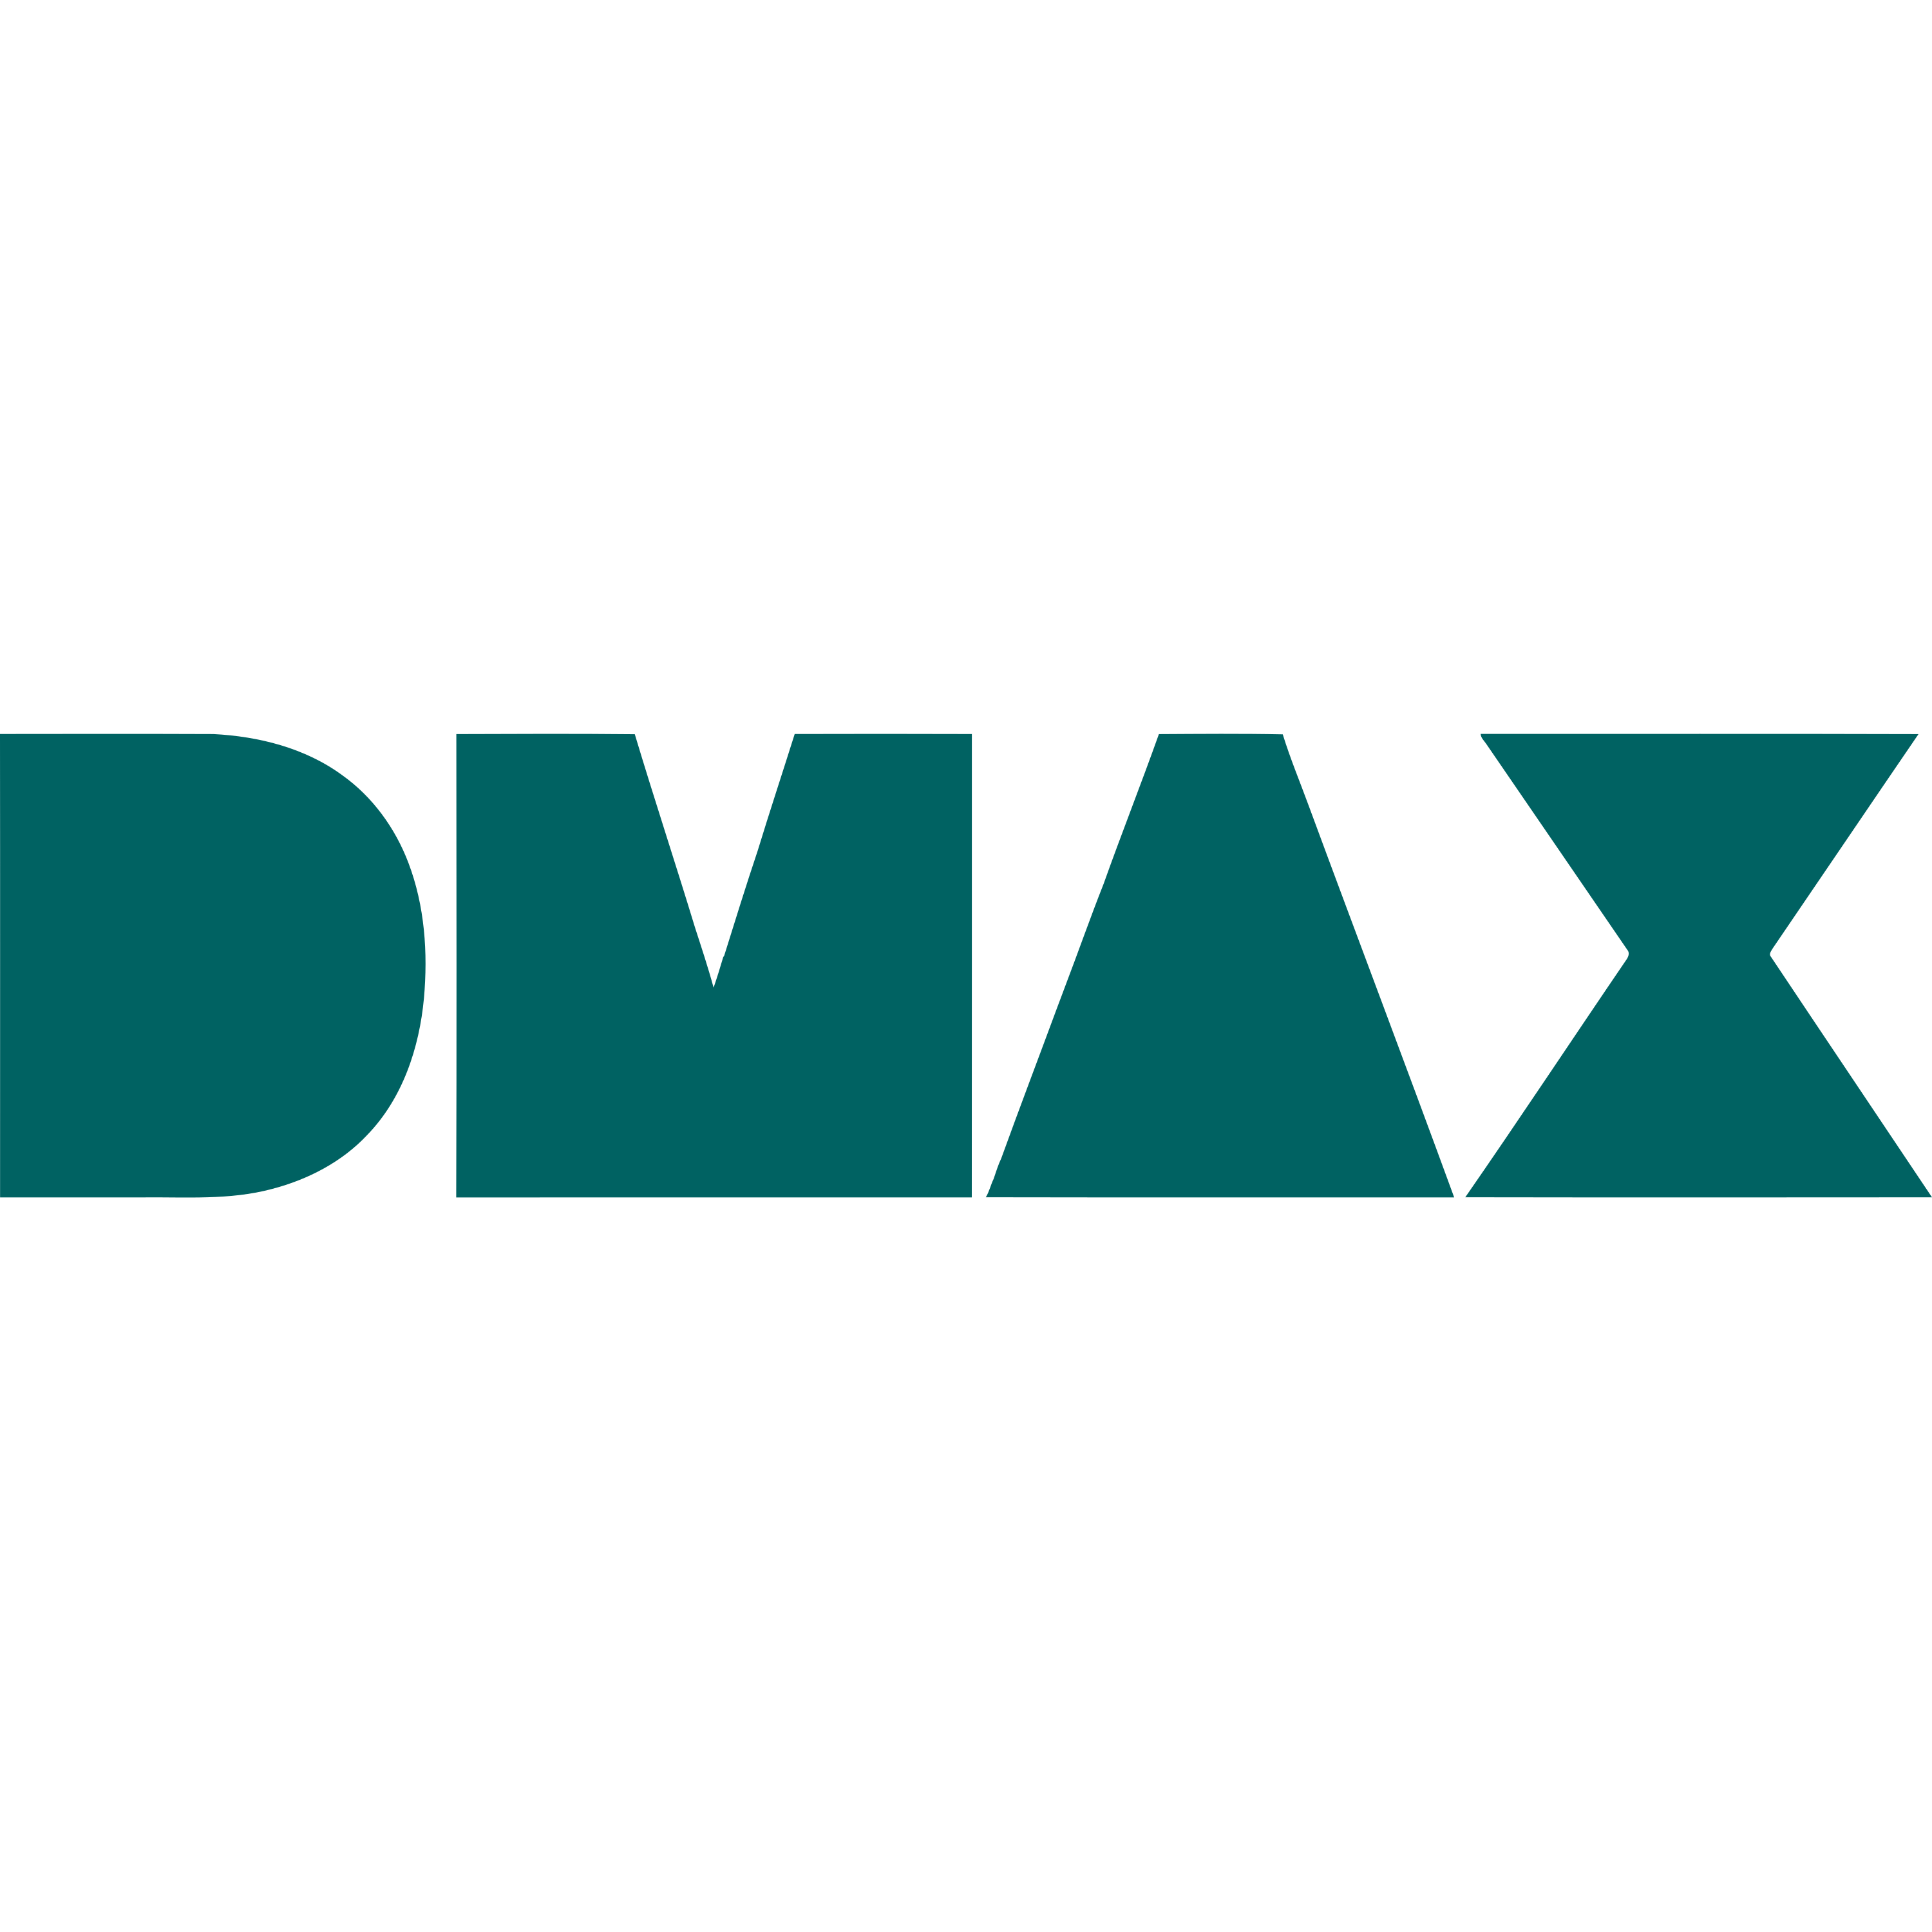 DMAX Spain Logo  Transparent Clipart